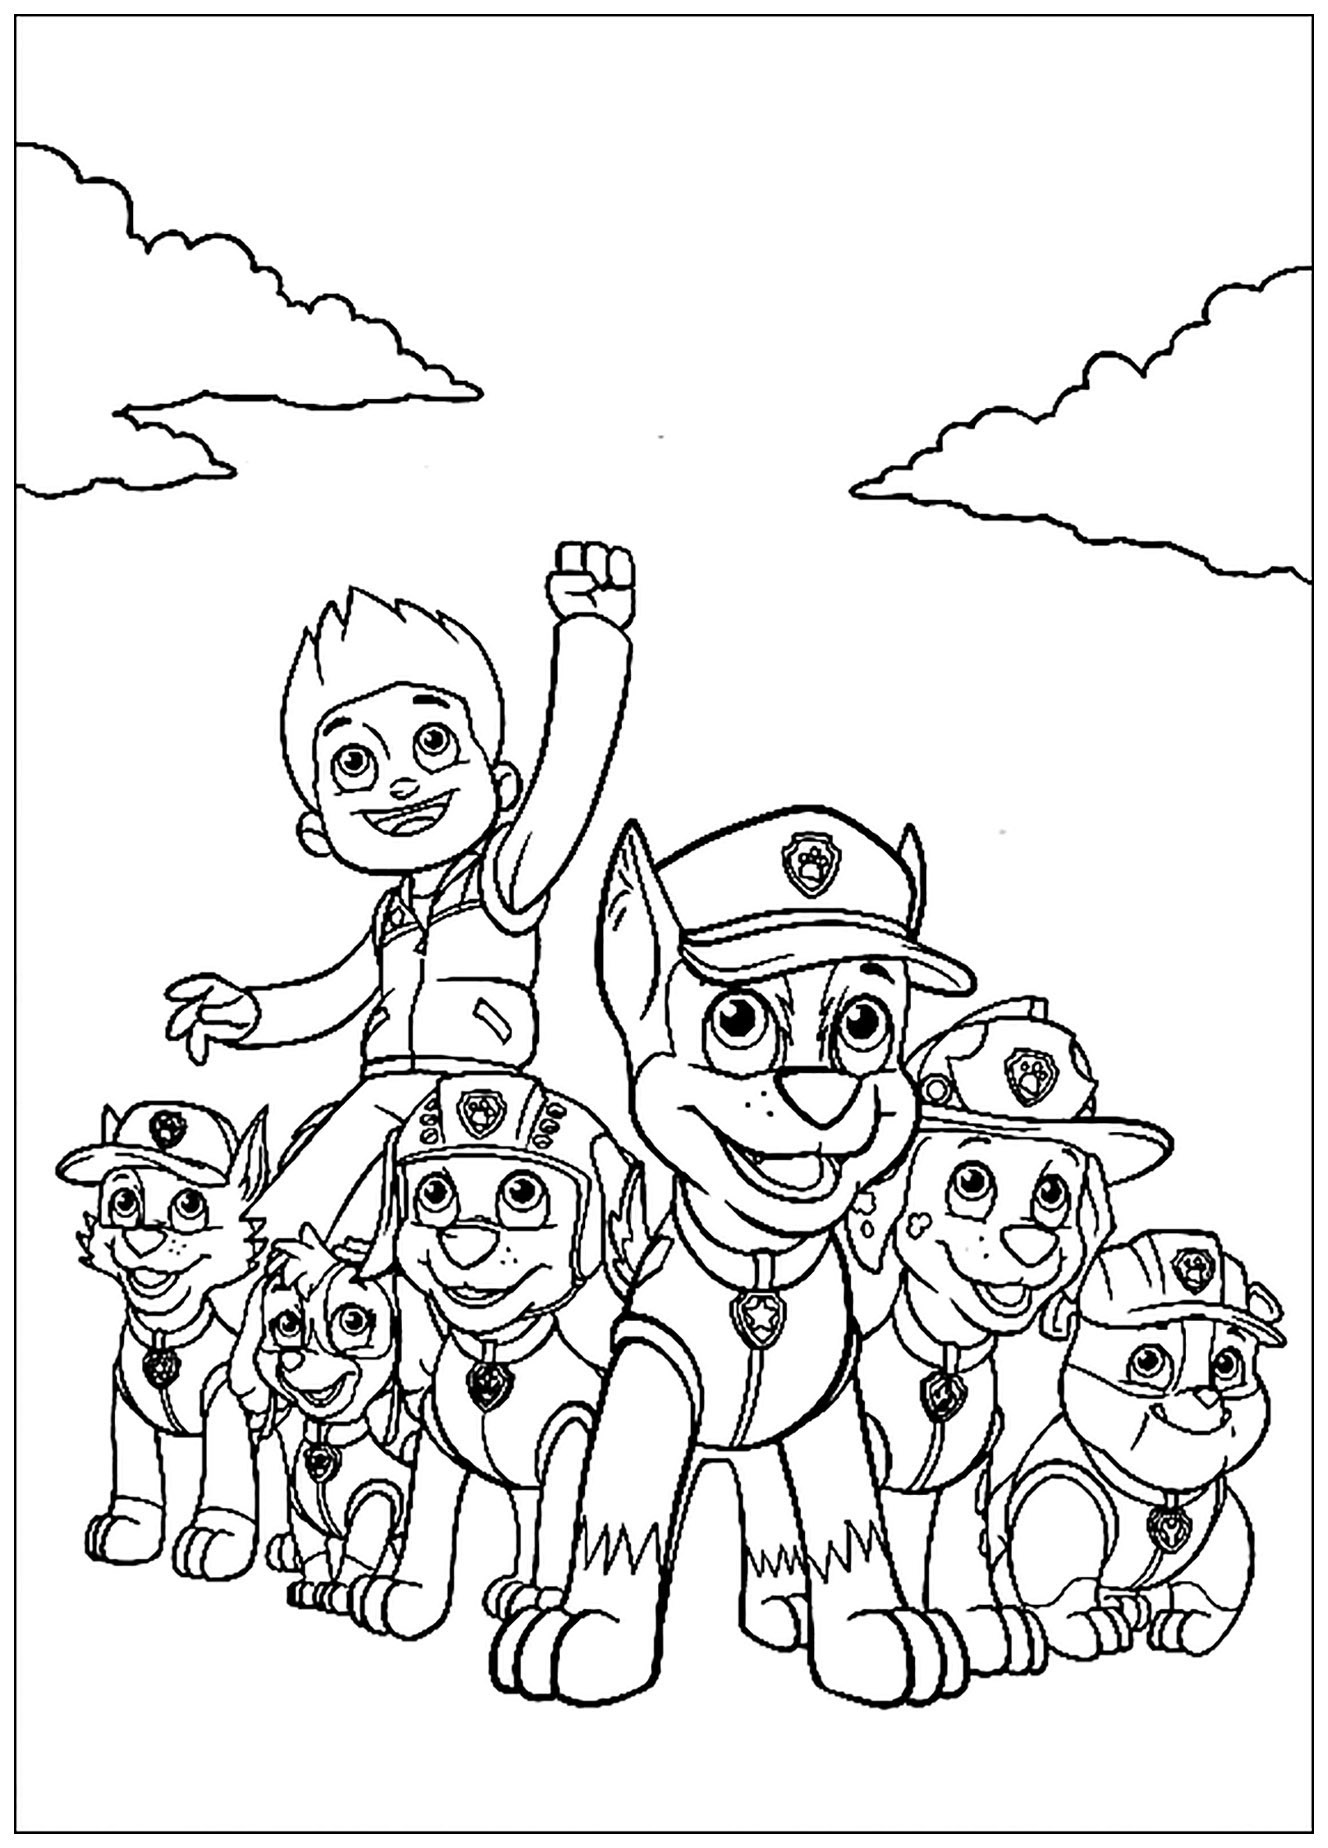 Dibujo de PAW Patrol, Patrulla de cachorros para colorear, fácil para los niños : Misión cumplida